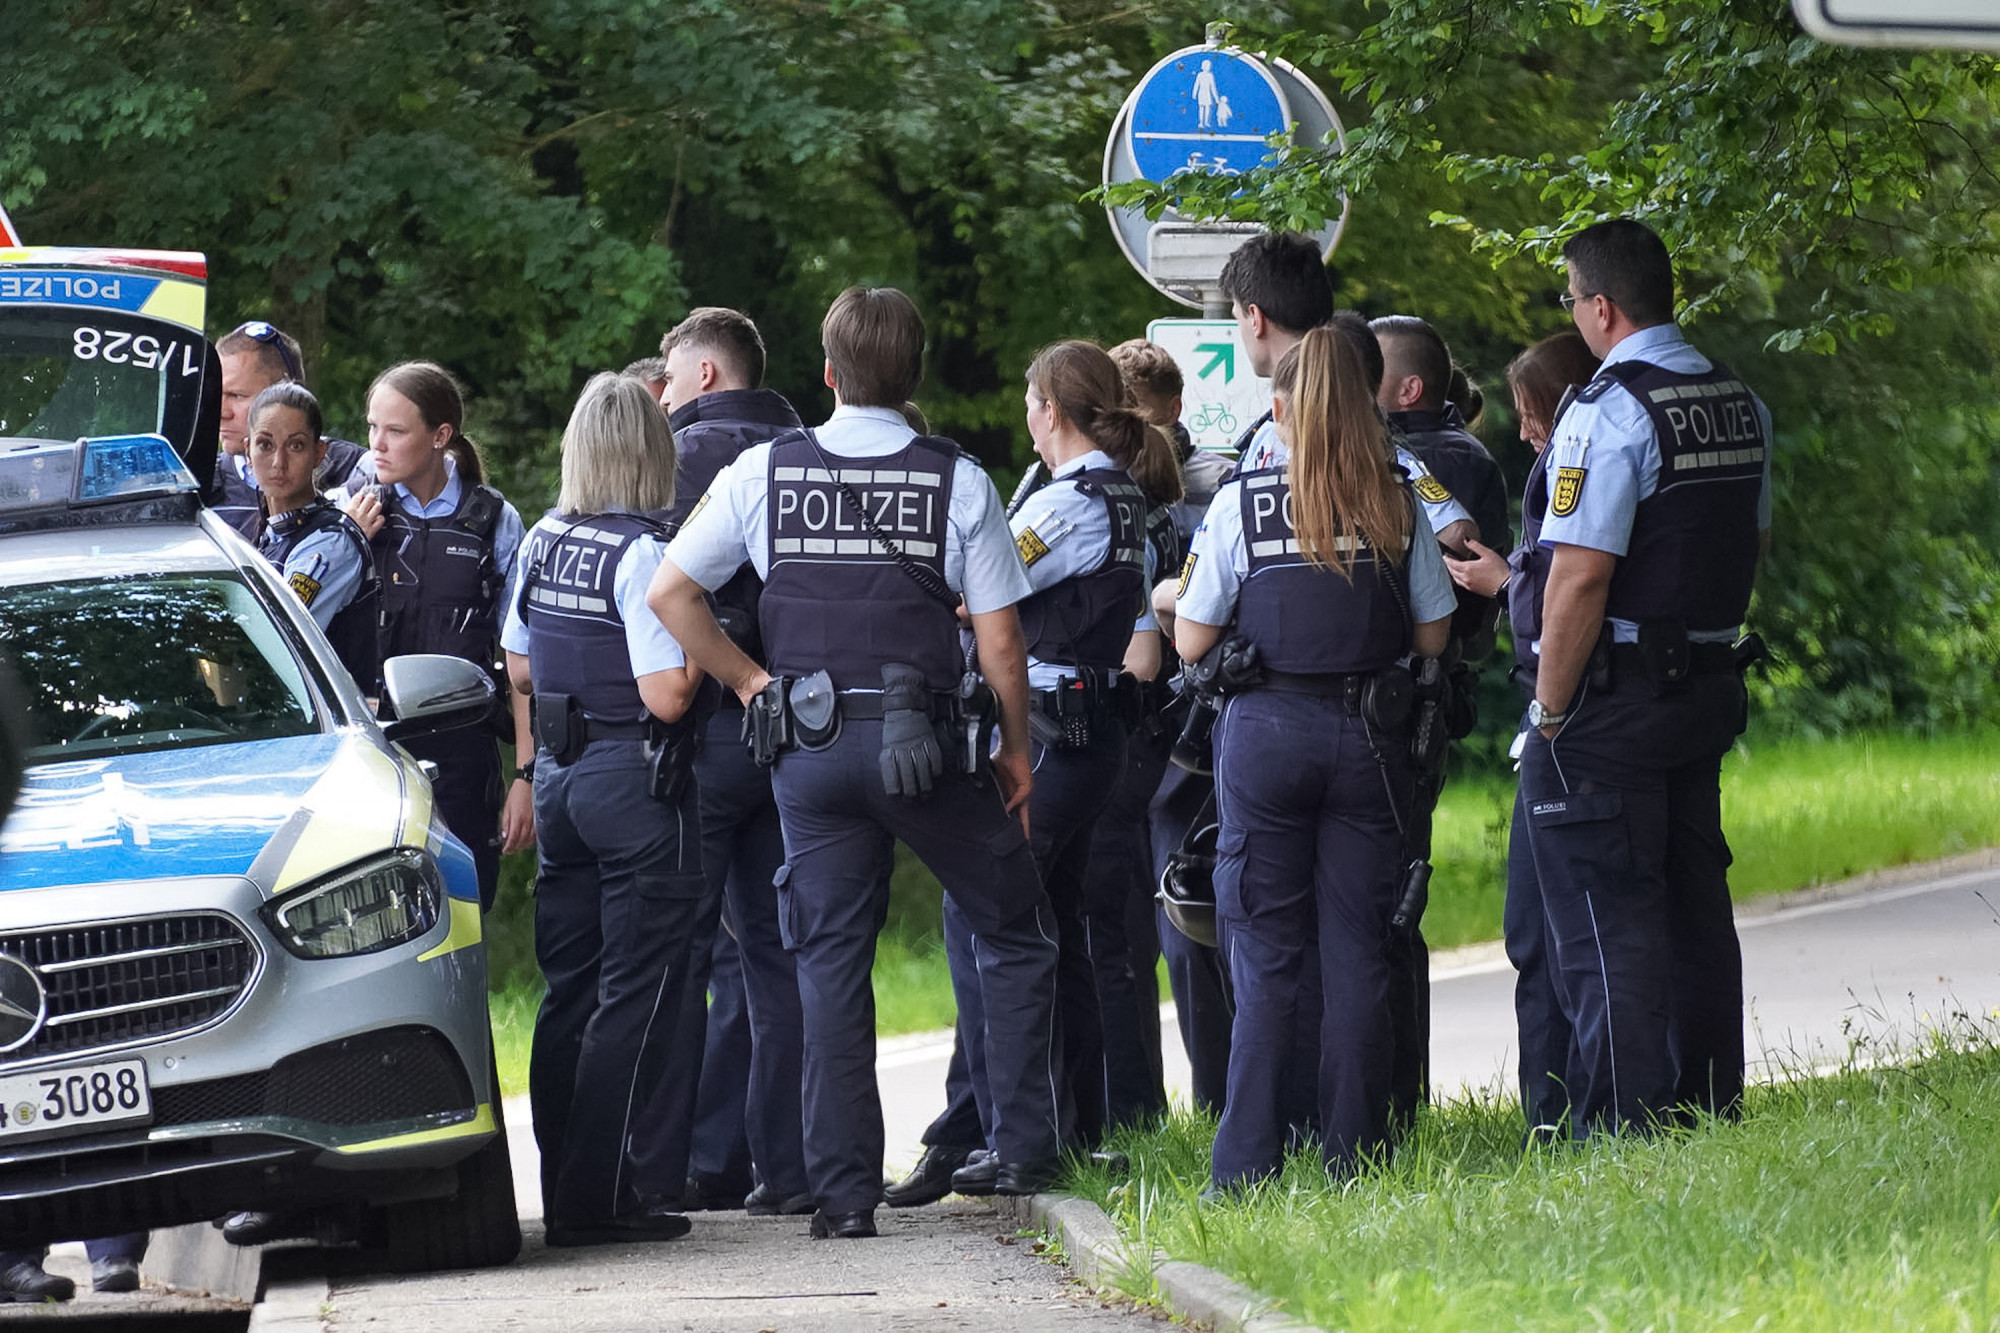 Hárman meghaltak, ketten megsebesültek egy lövöldözésben Németországban